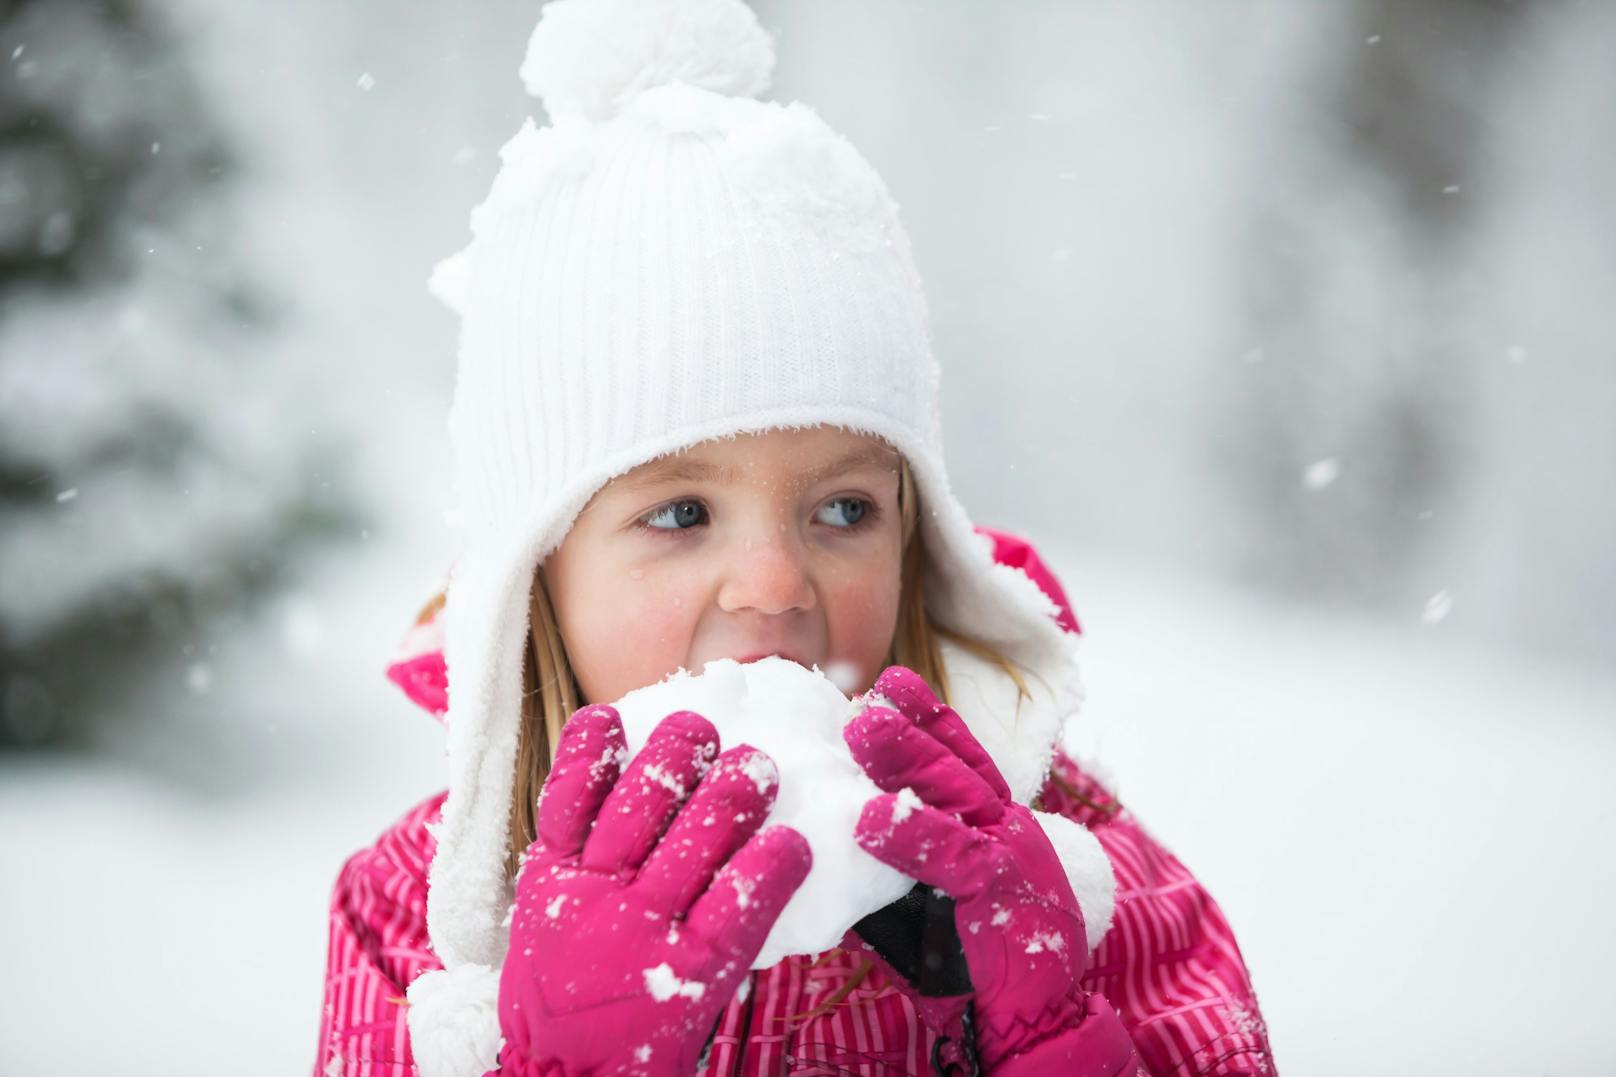 Ist Schnee essen gefährlich für Kinder?